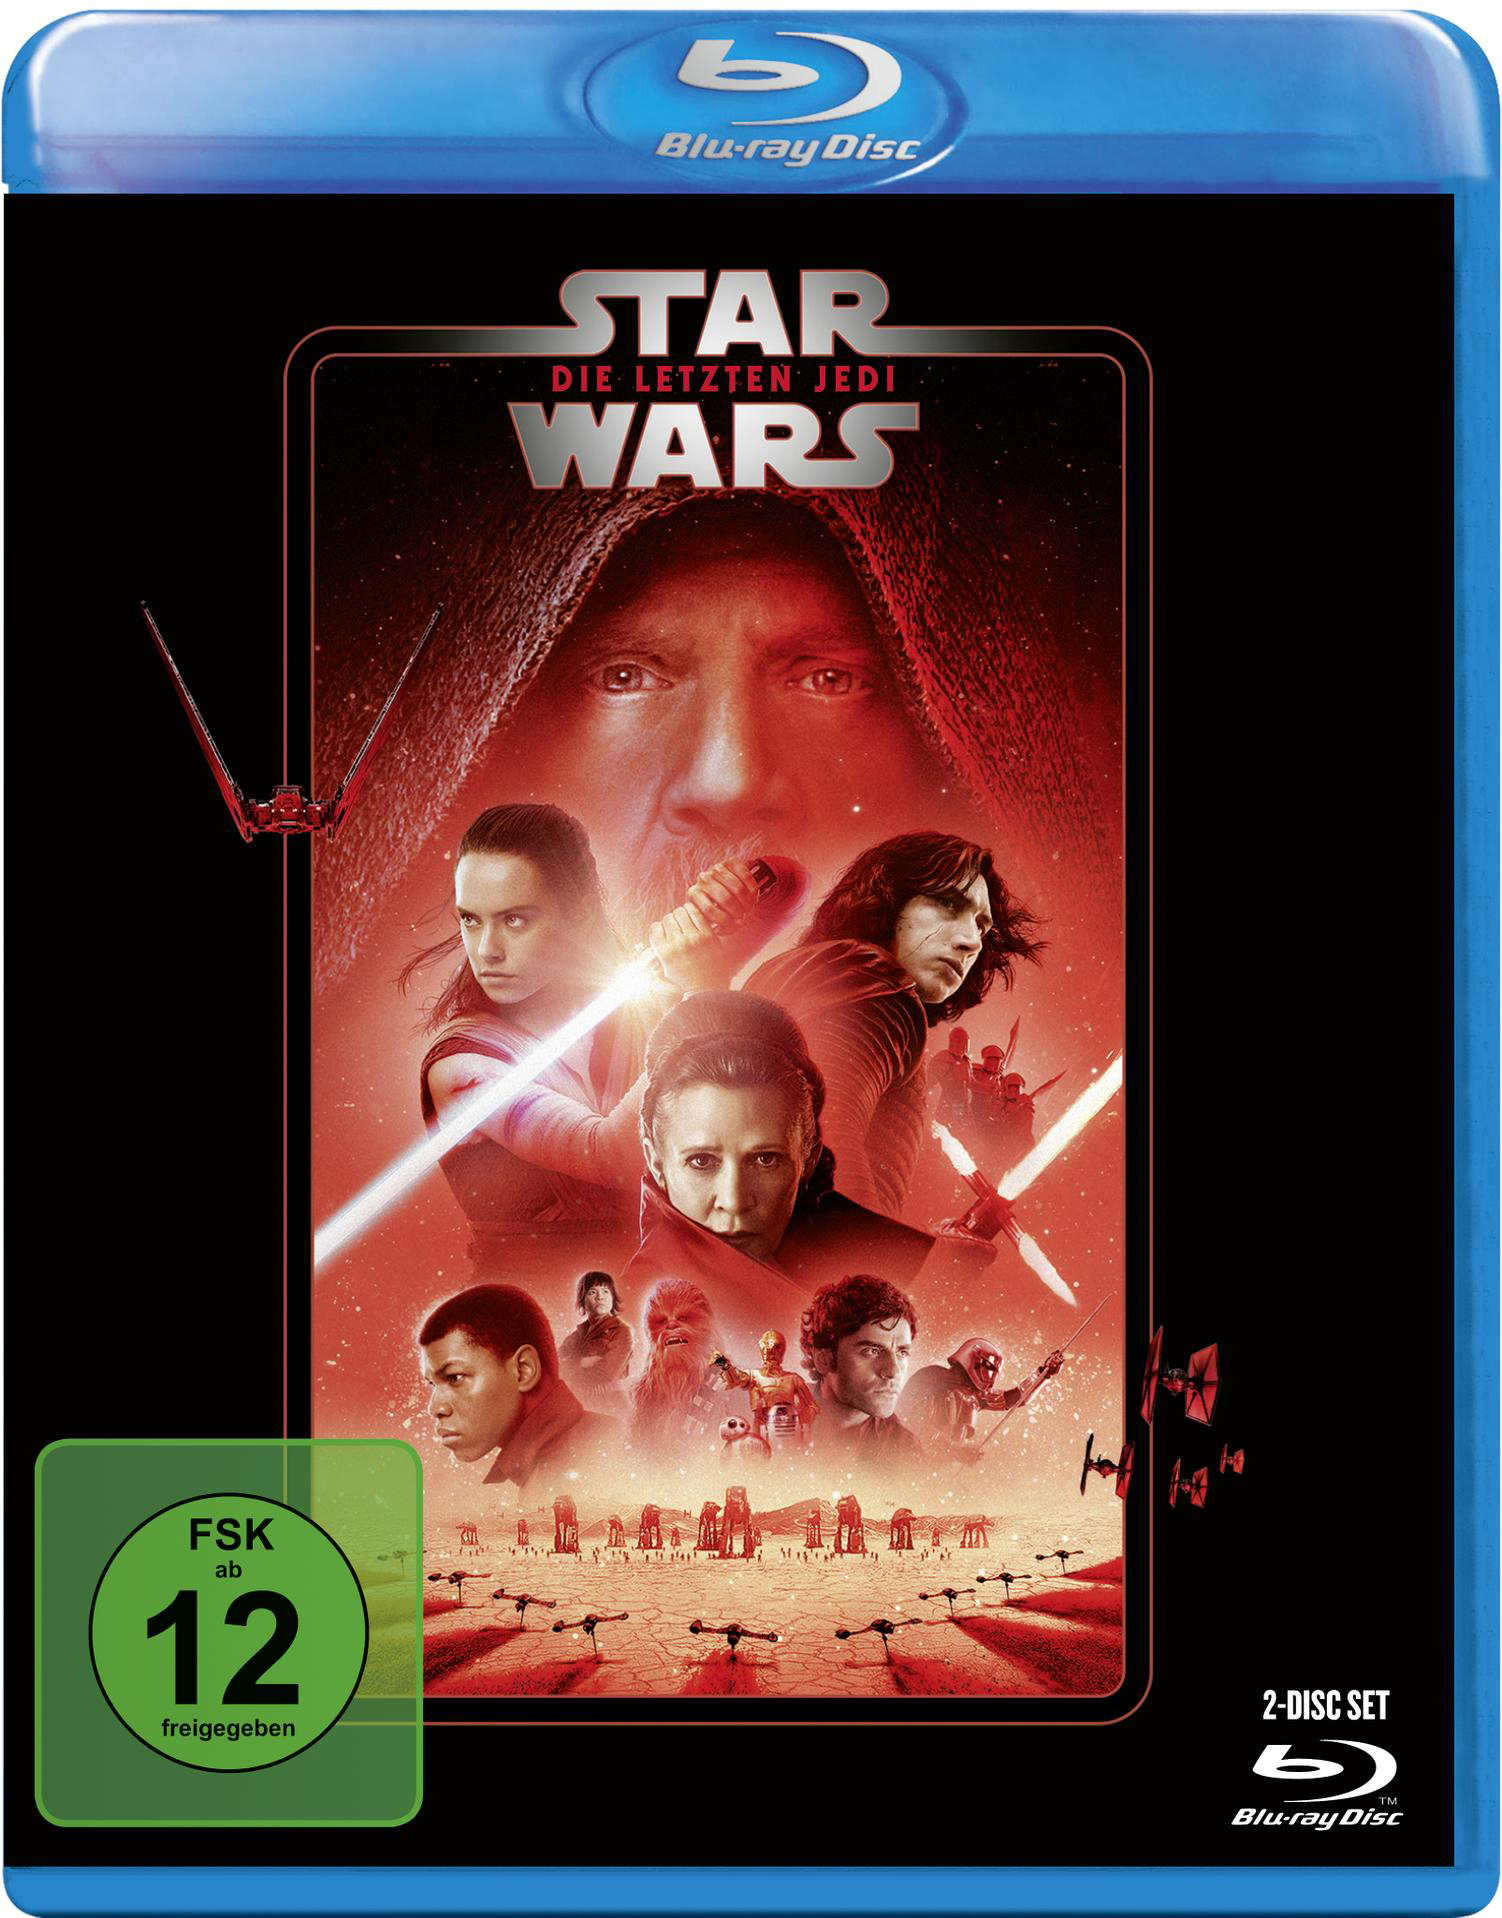 Jedi Die Blu-ray Wars: Star letzten